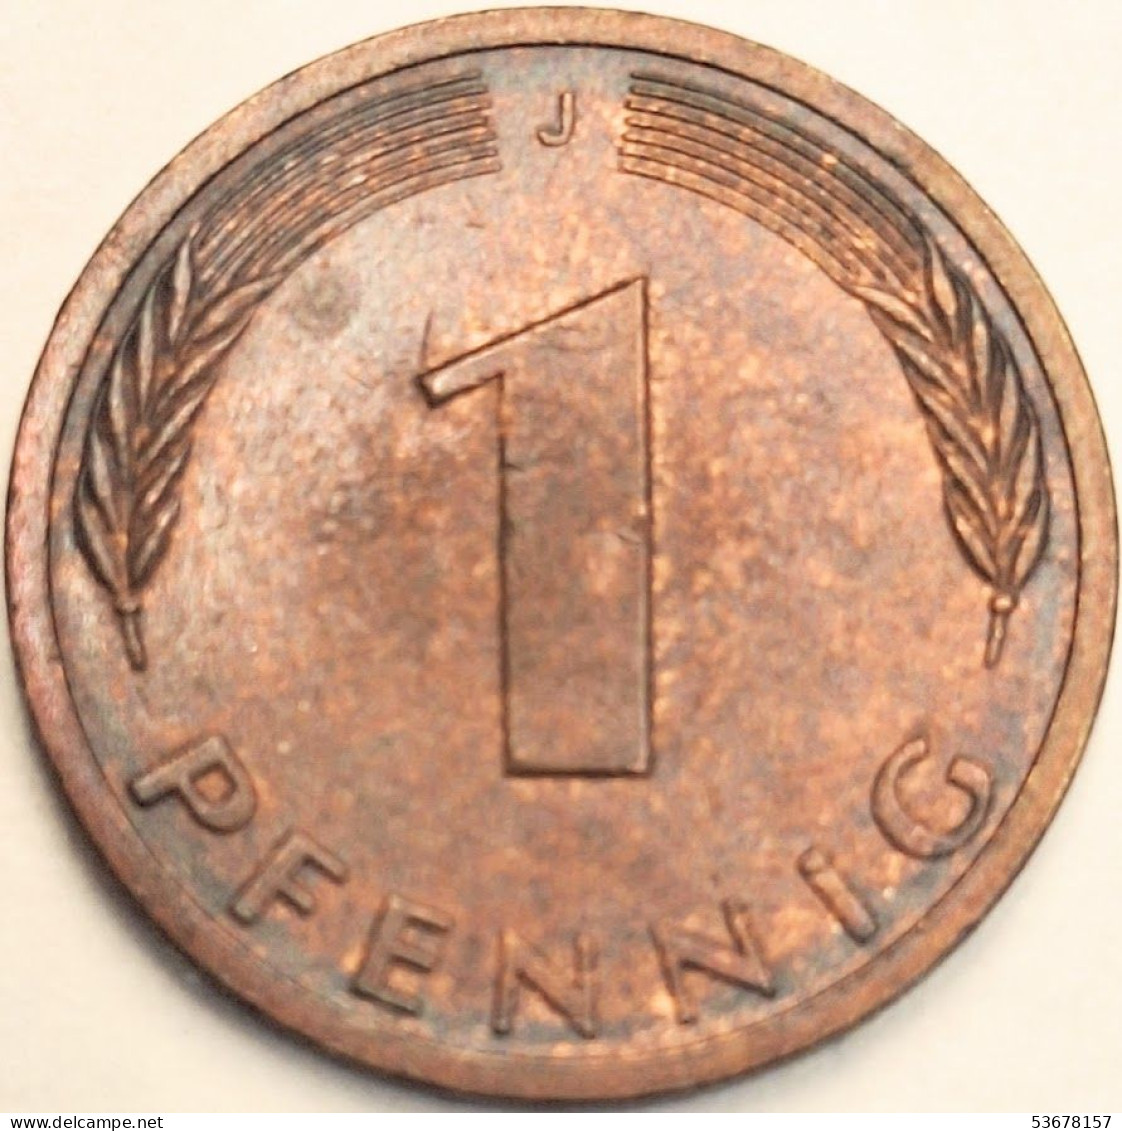 Germany Federal Republic - Pfennig 1981 J, KM# 105 (#4485) - 1 Pfennig